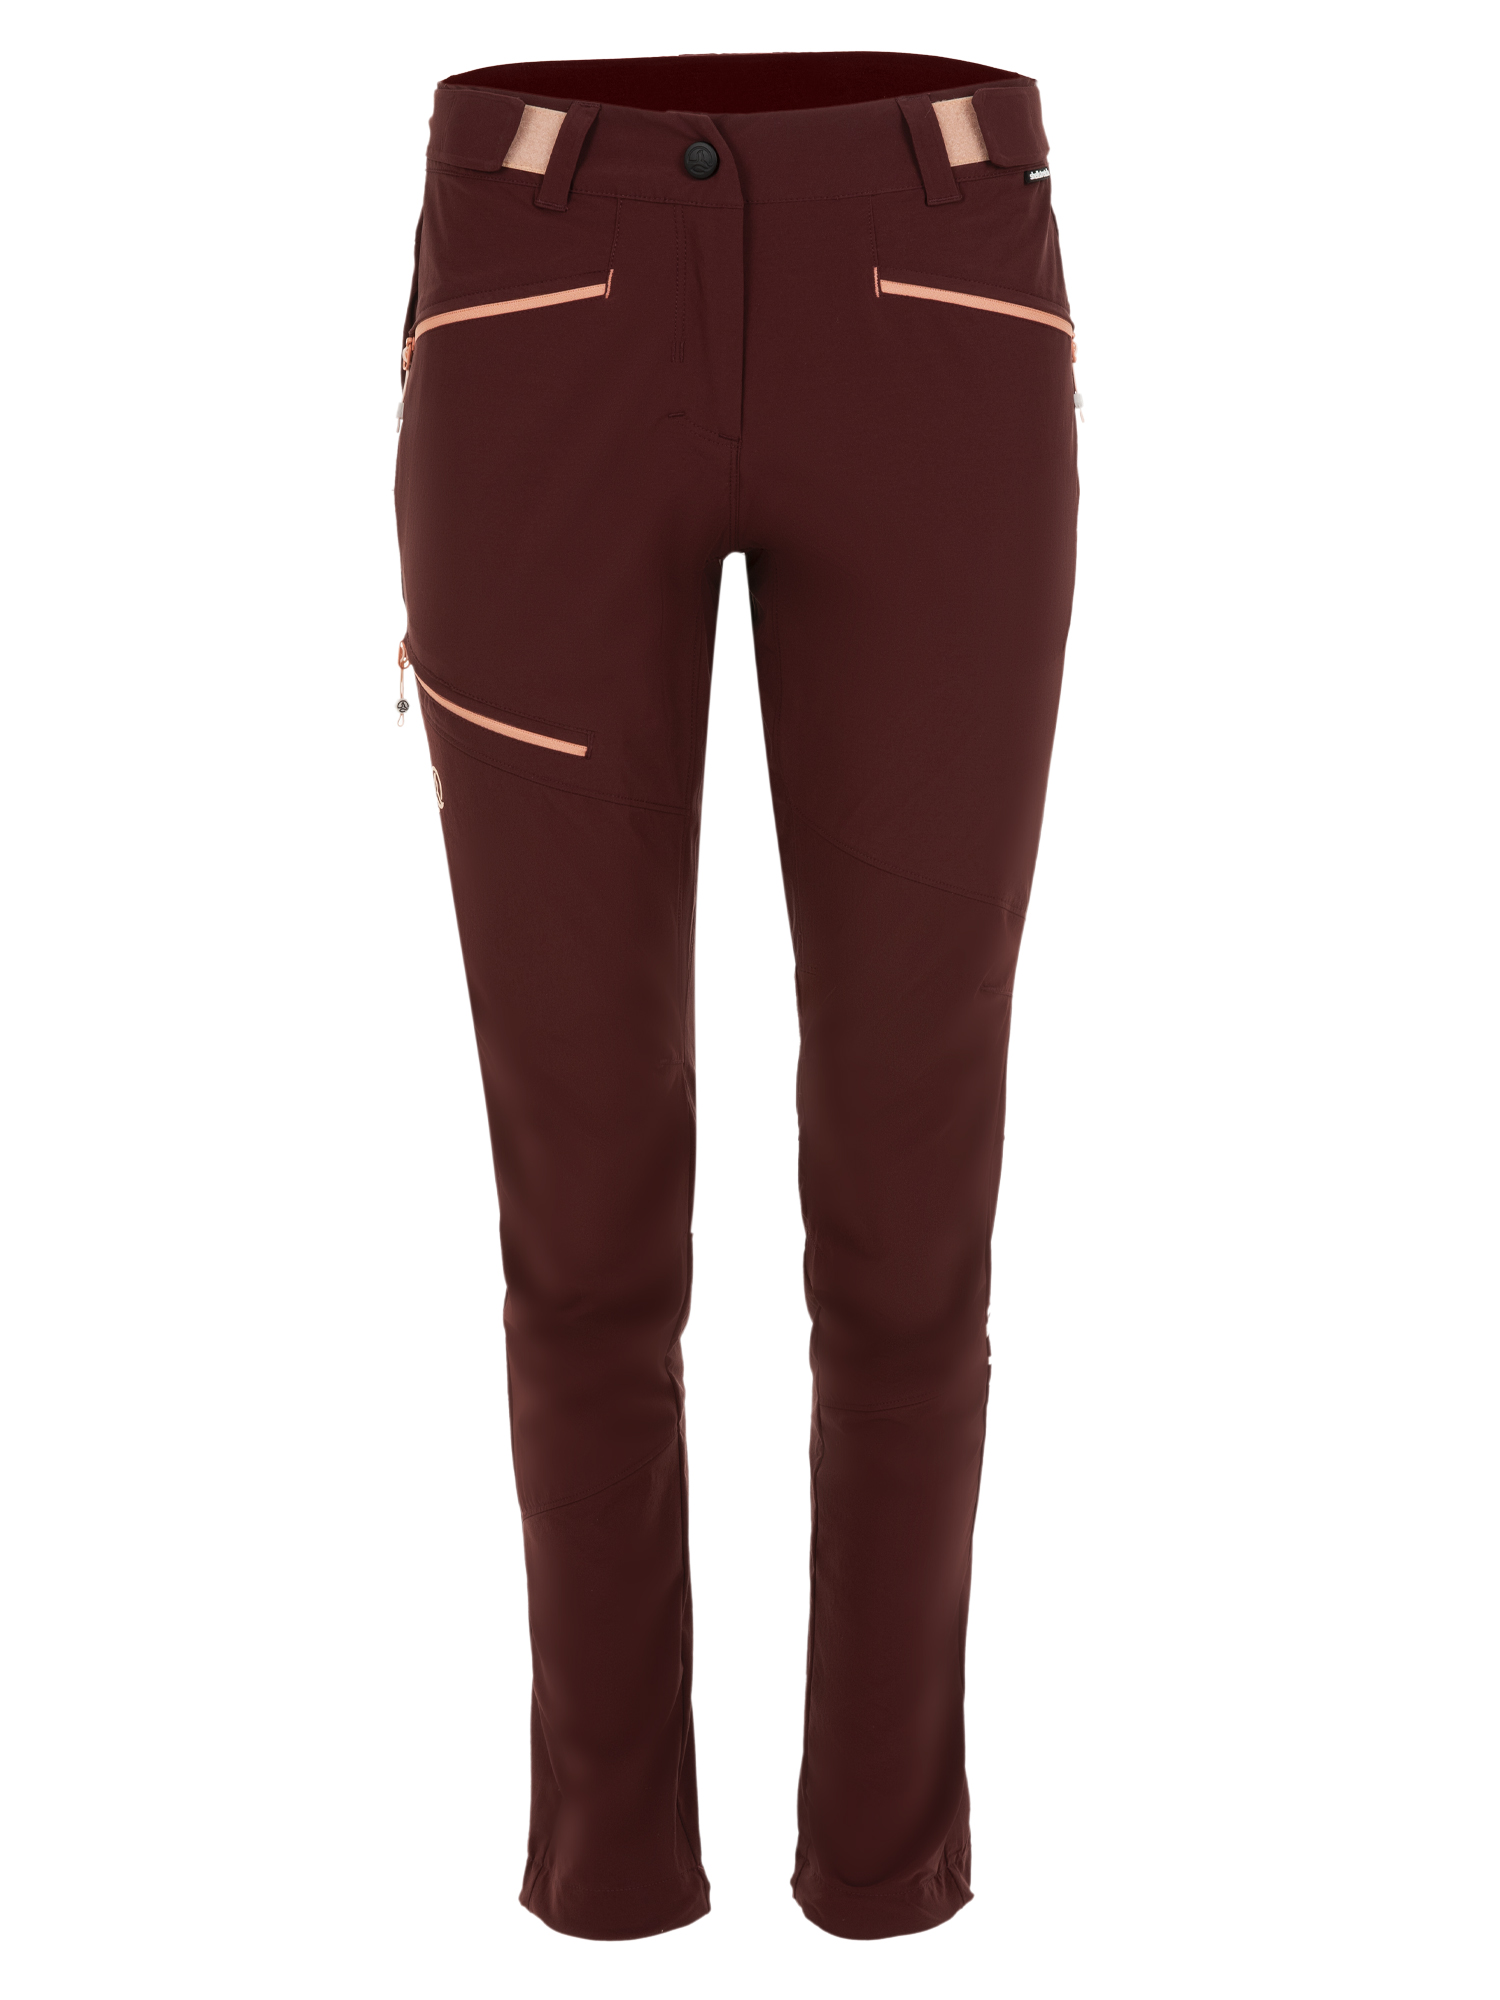 Спортивные брюки женские Ternua Rotar Pt W бордовые XS